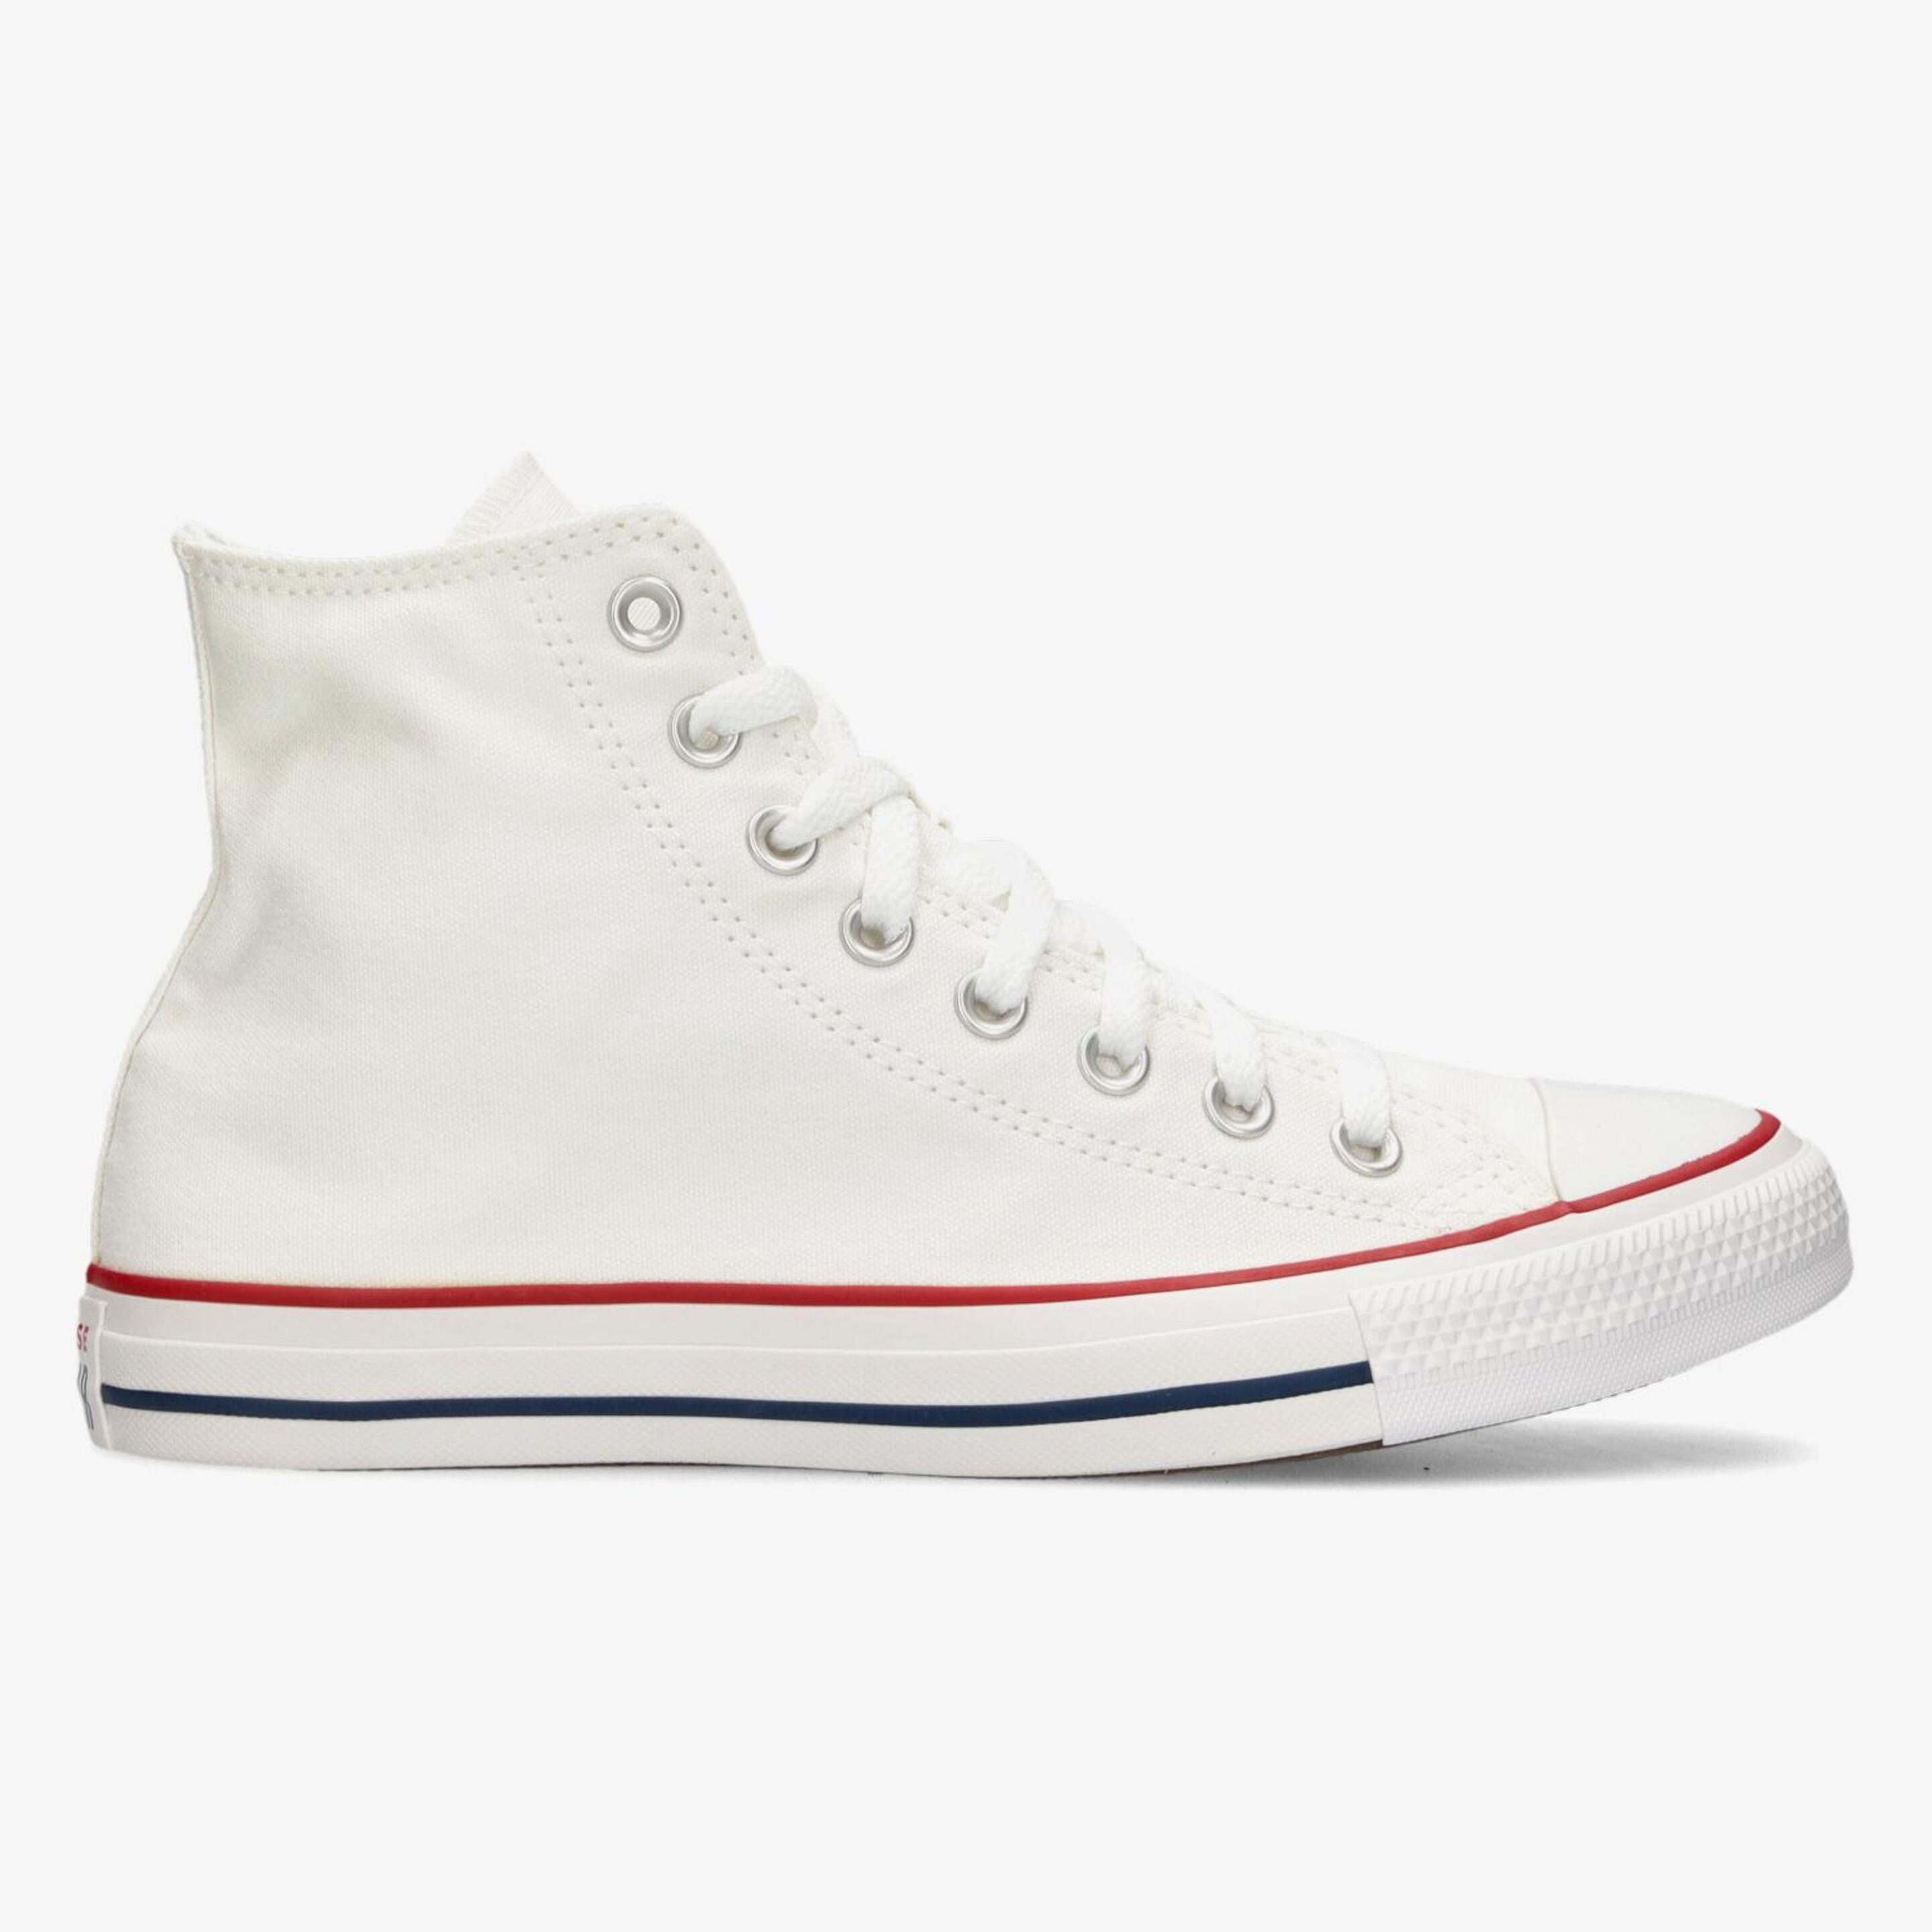 Converse All Star-hi Blancas - blanco - Zapatillas lona